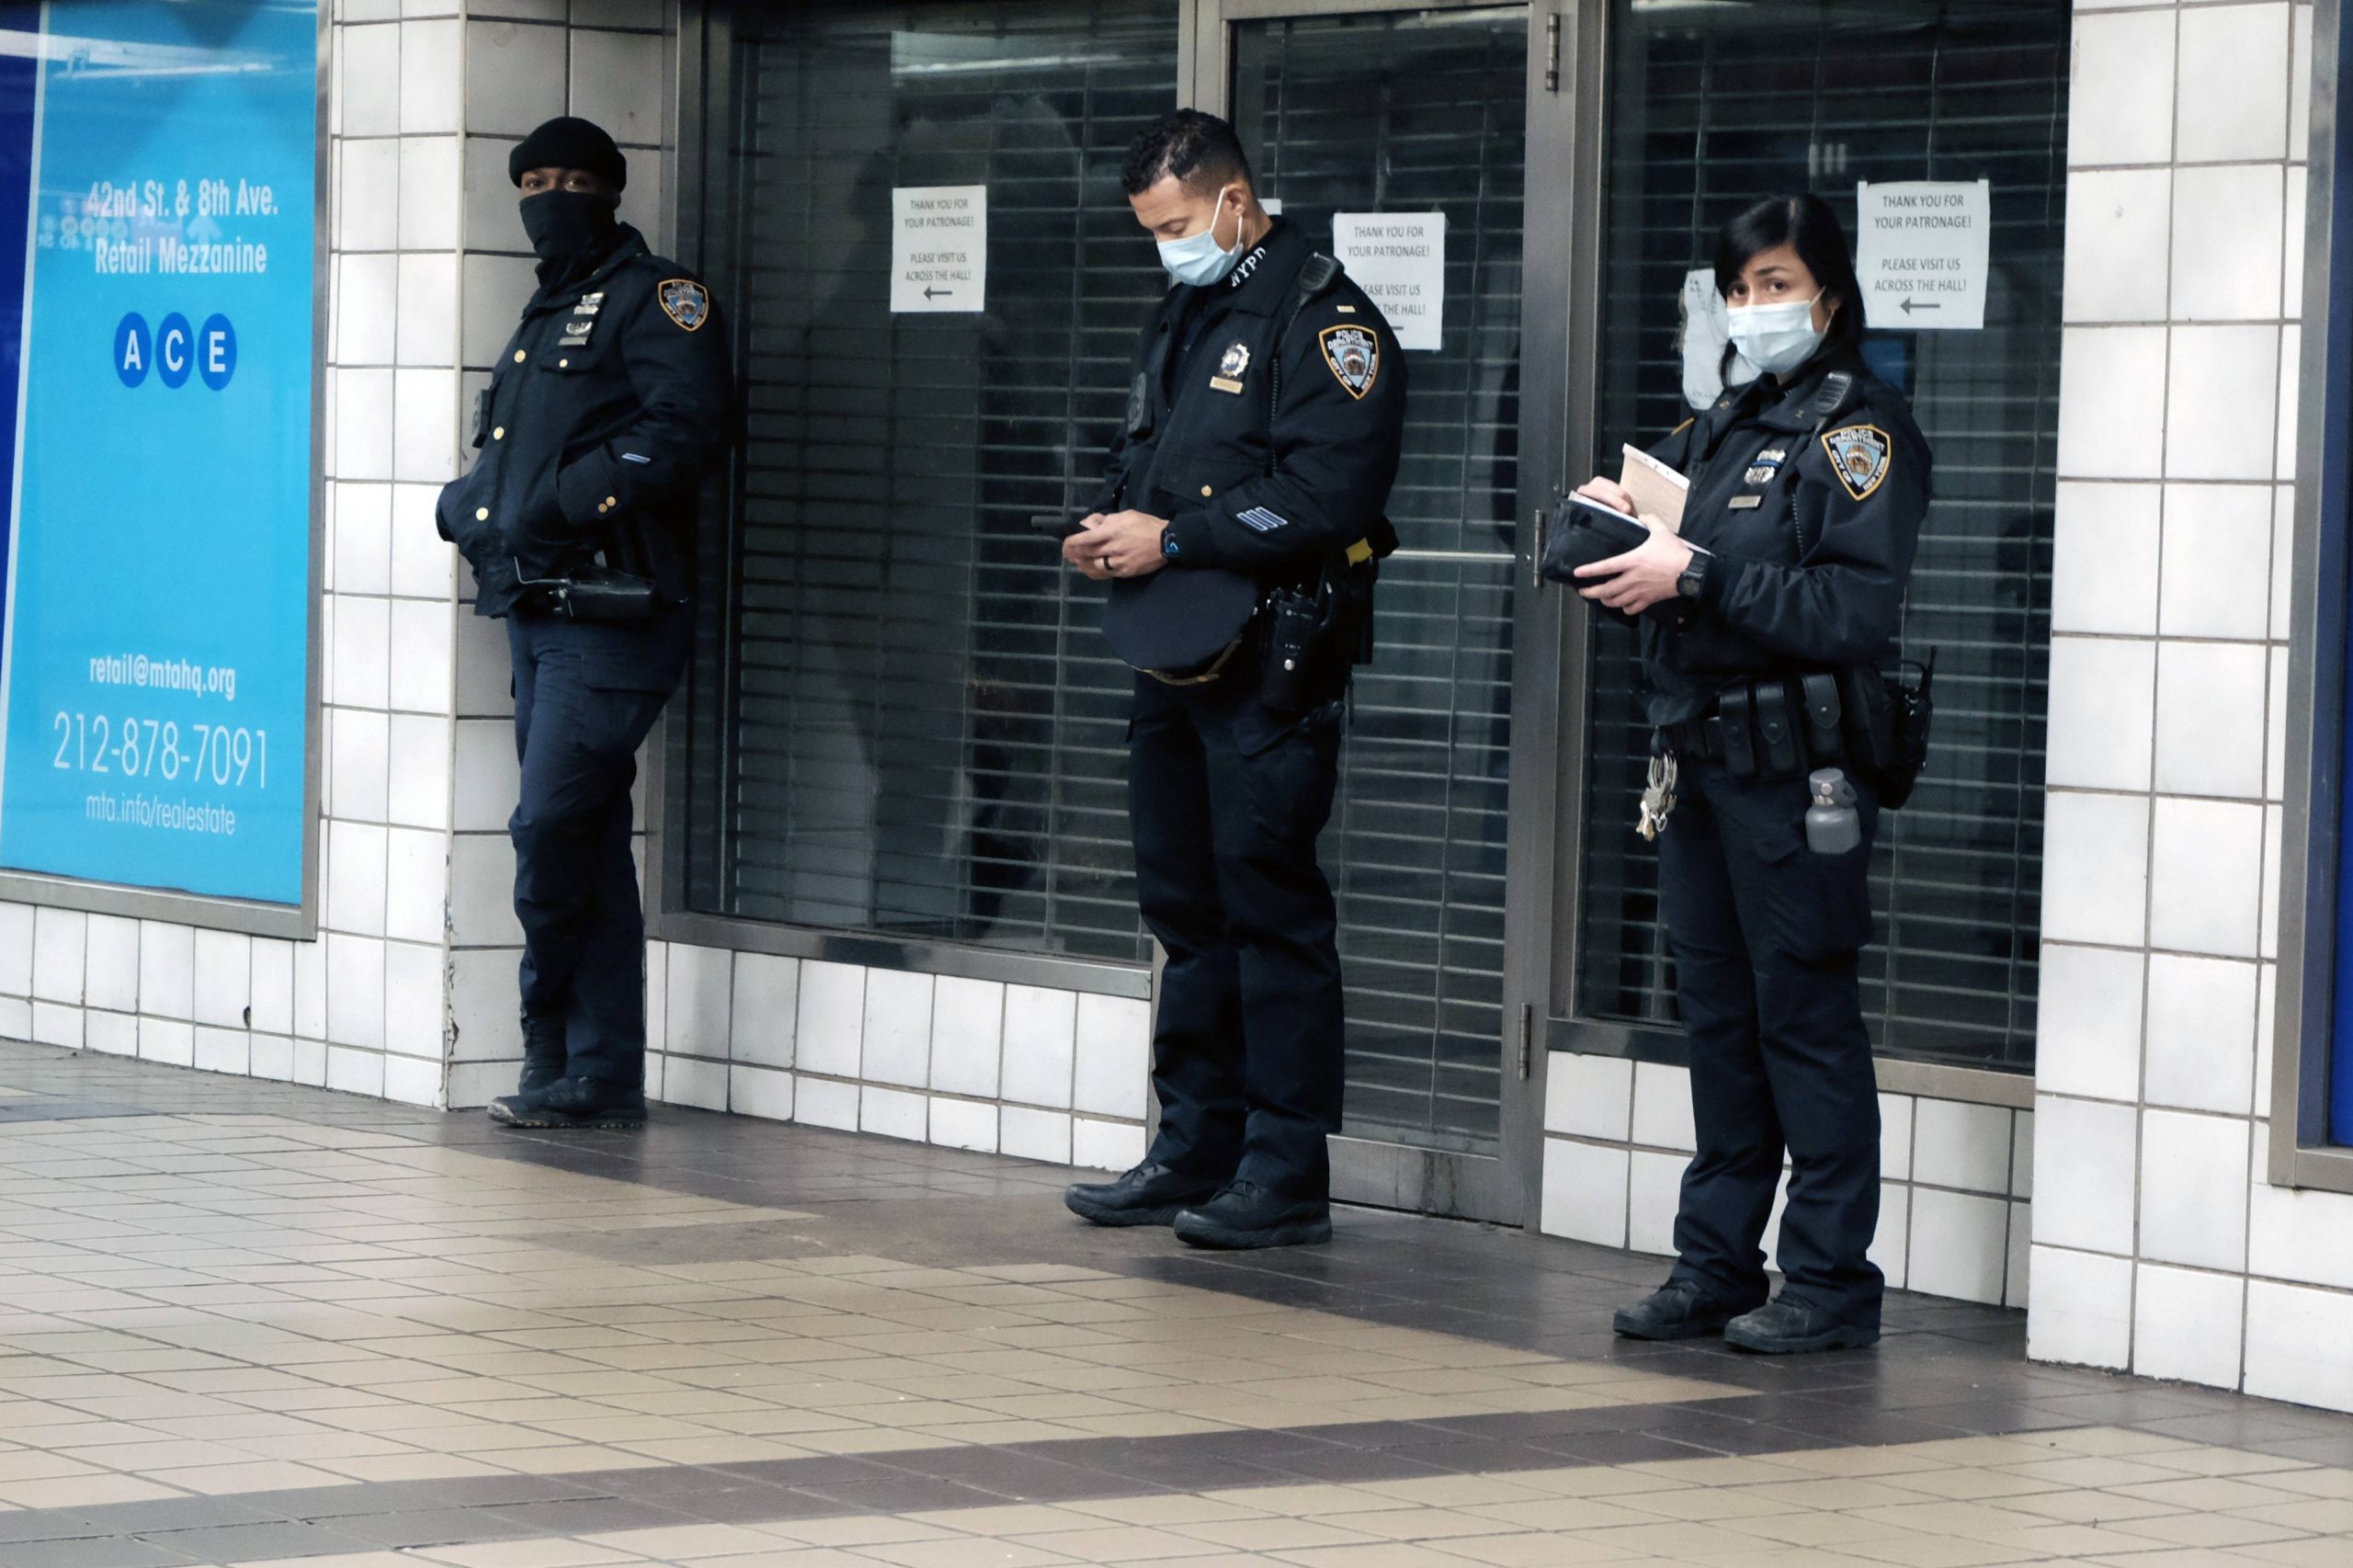  纽约市地铁再有乘客被推入铁轨 一周内第二起